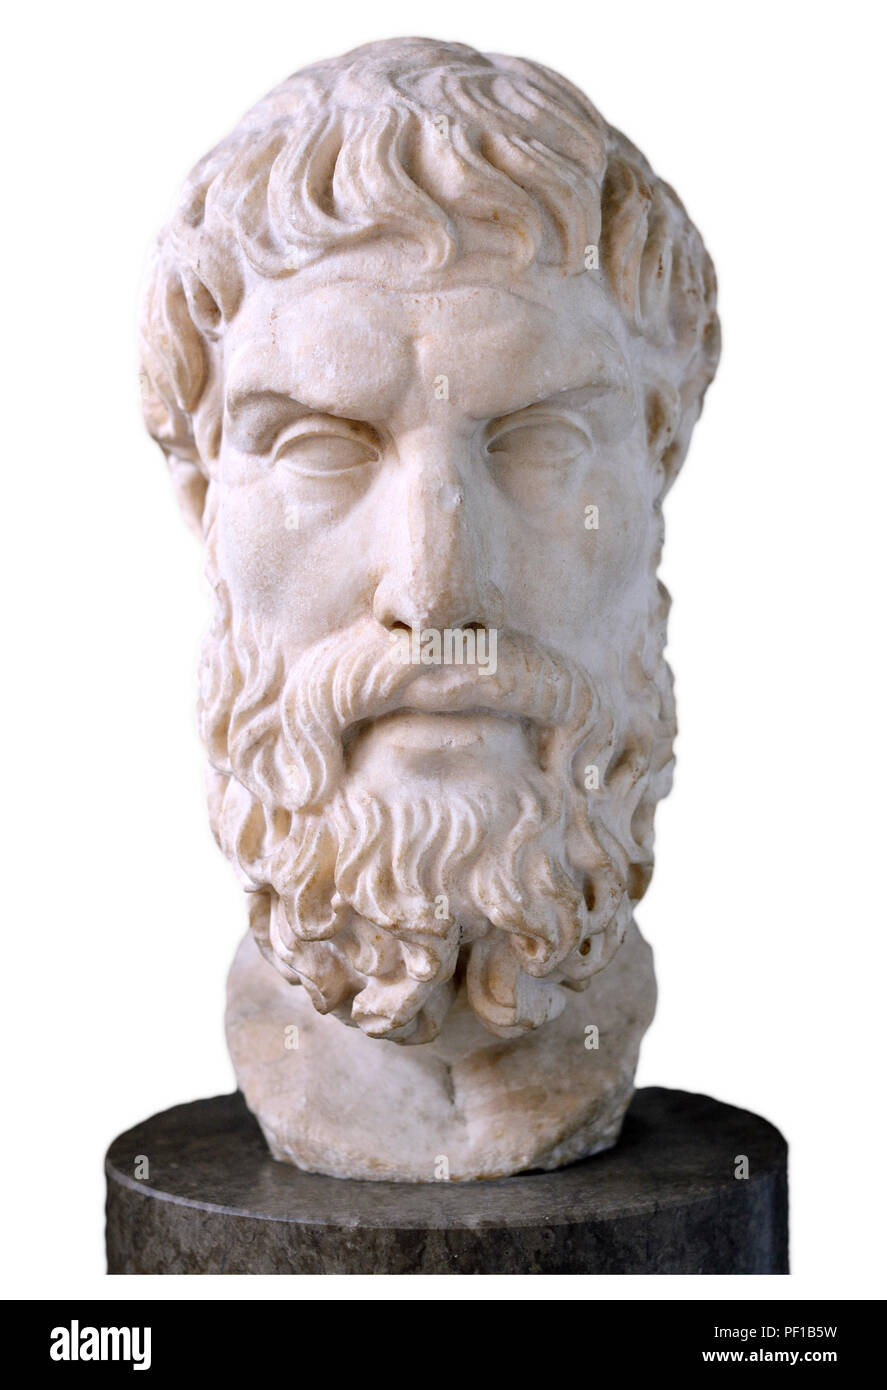 Buste en marbre de Epikouros (philosophe grec : 342/1 BC-271/0) fondateur de l'école épicurienne de la philosophie. British Museum, Bloomsbury, Londres, Englan Banque D'Images